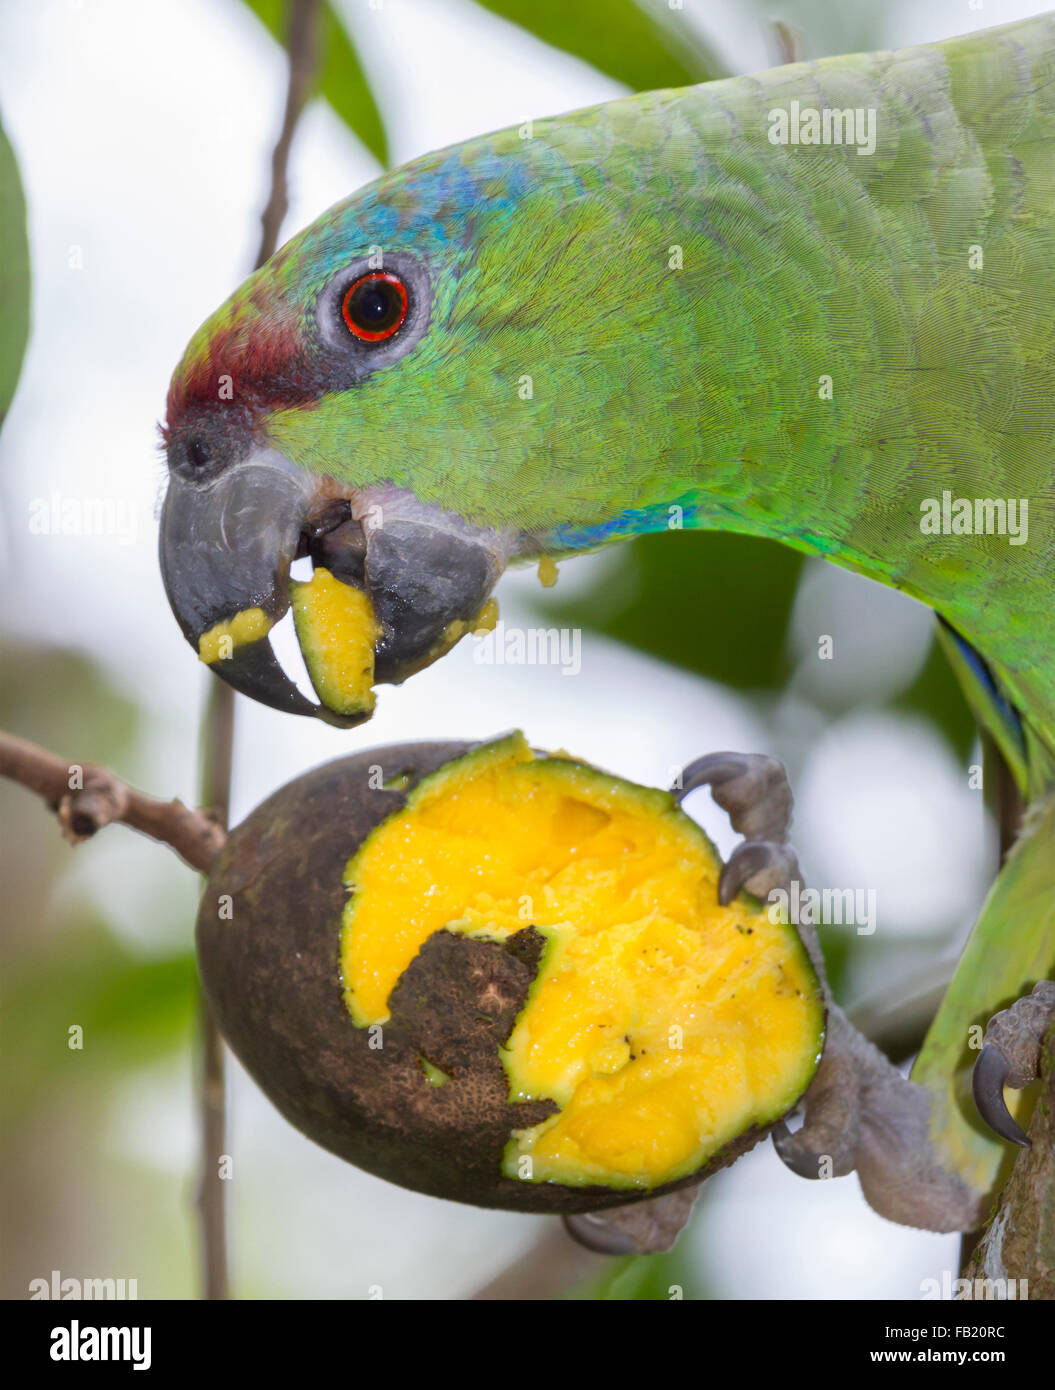 Festive amazon (Amazona festiva) eating mango, Pacaya Samiria National Reserve, Yanayacu River, Amazon area, Peru Stock Photo